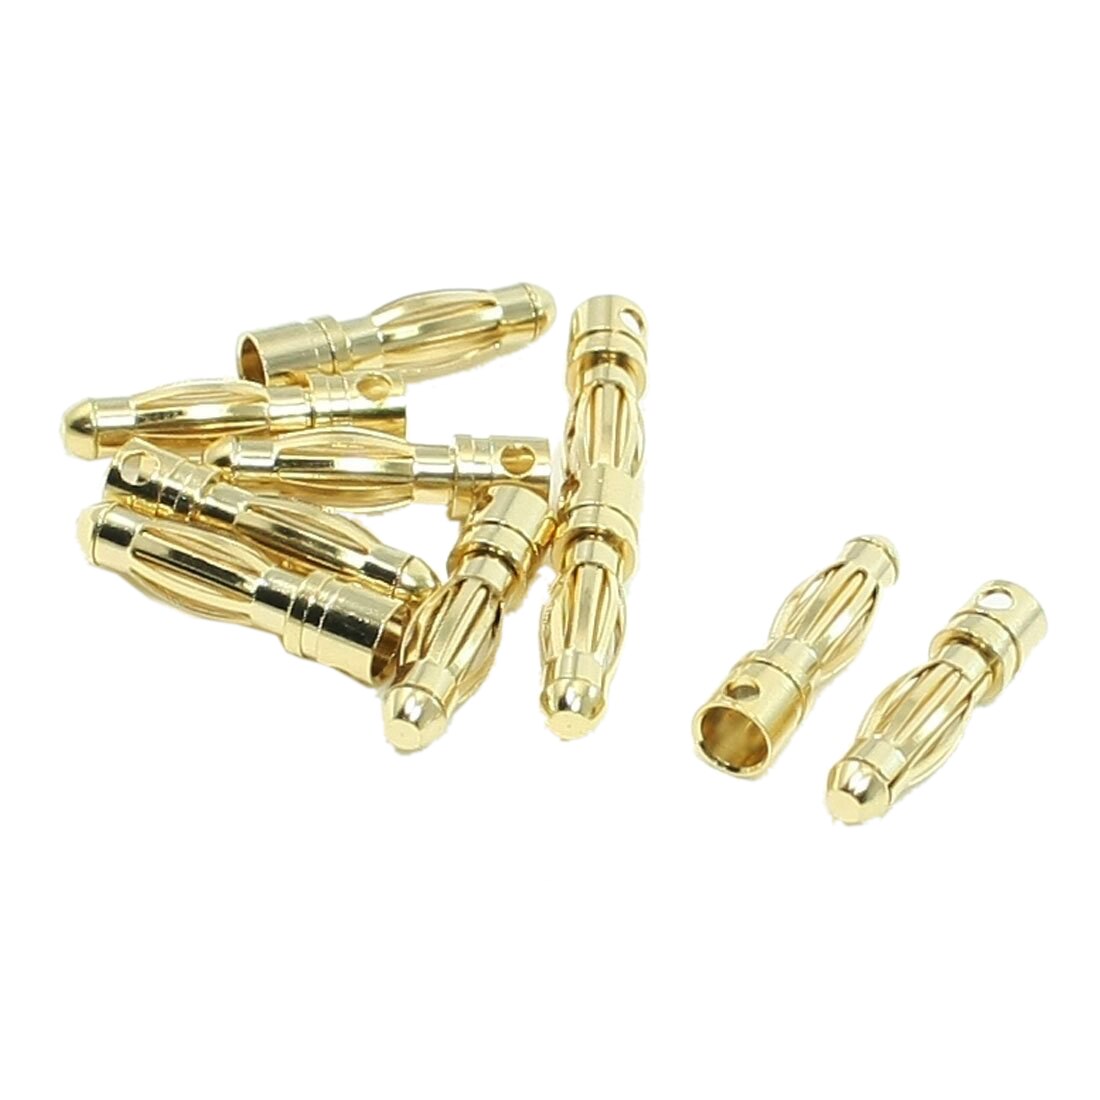 Bullet Connectors, 4mm